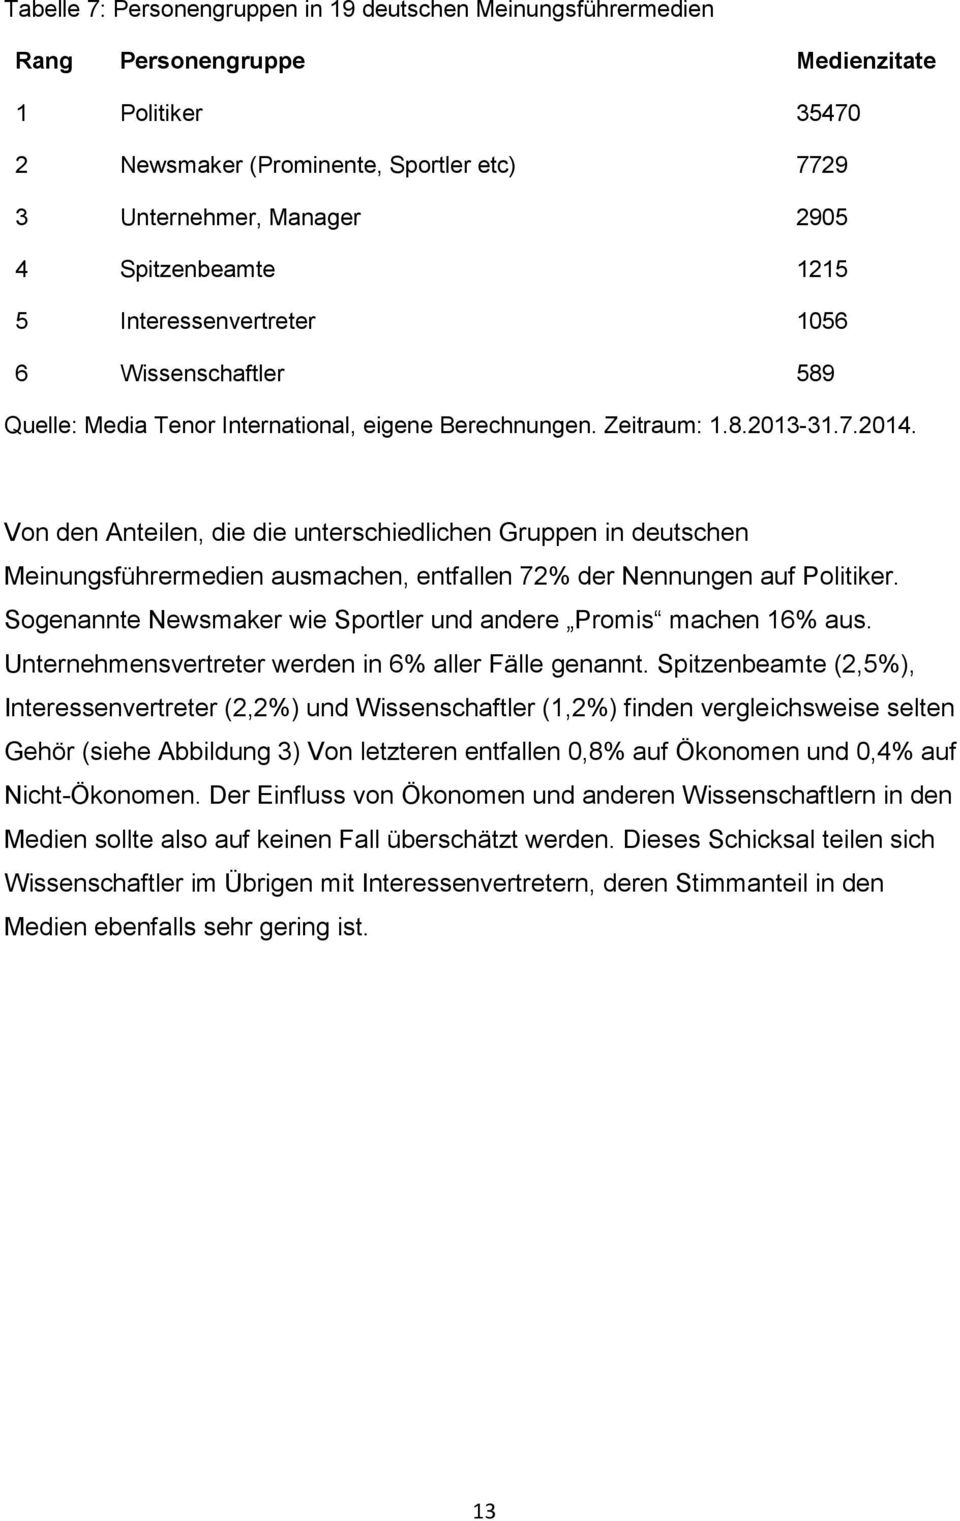 Von den Anteilen, die die unterschiedlichen Gruppen in deutschen Meinungsführermedien ausmachen, entfallen 72% der Nennungen auf Politiker.